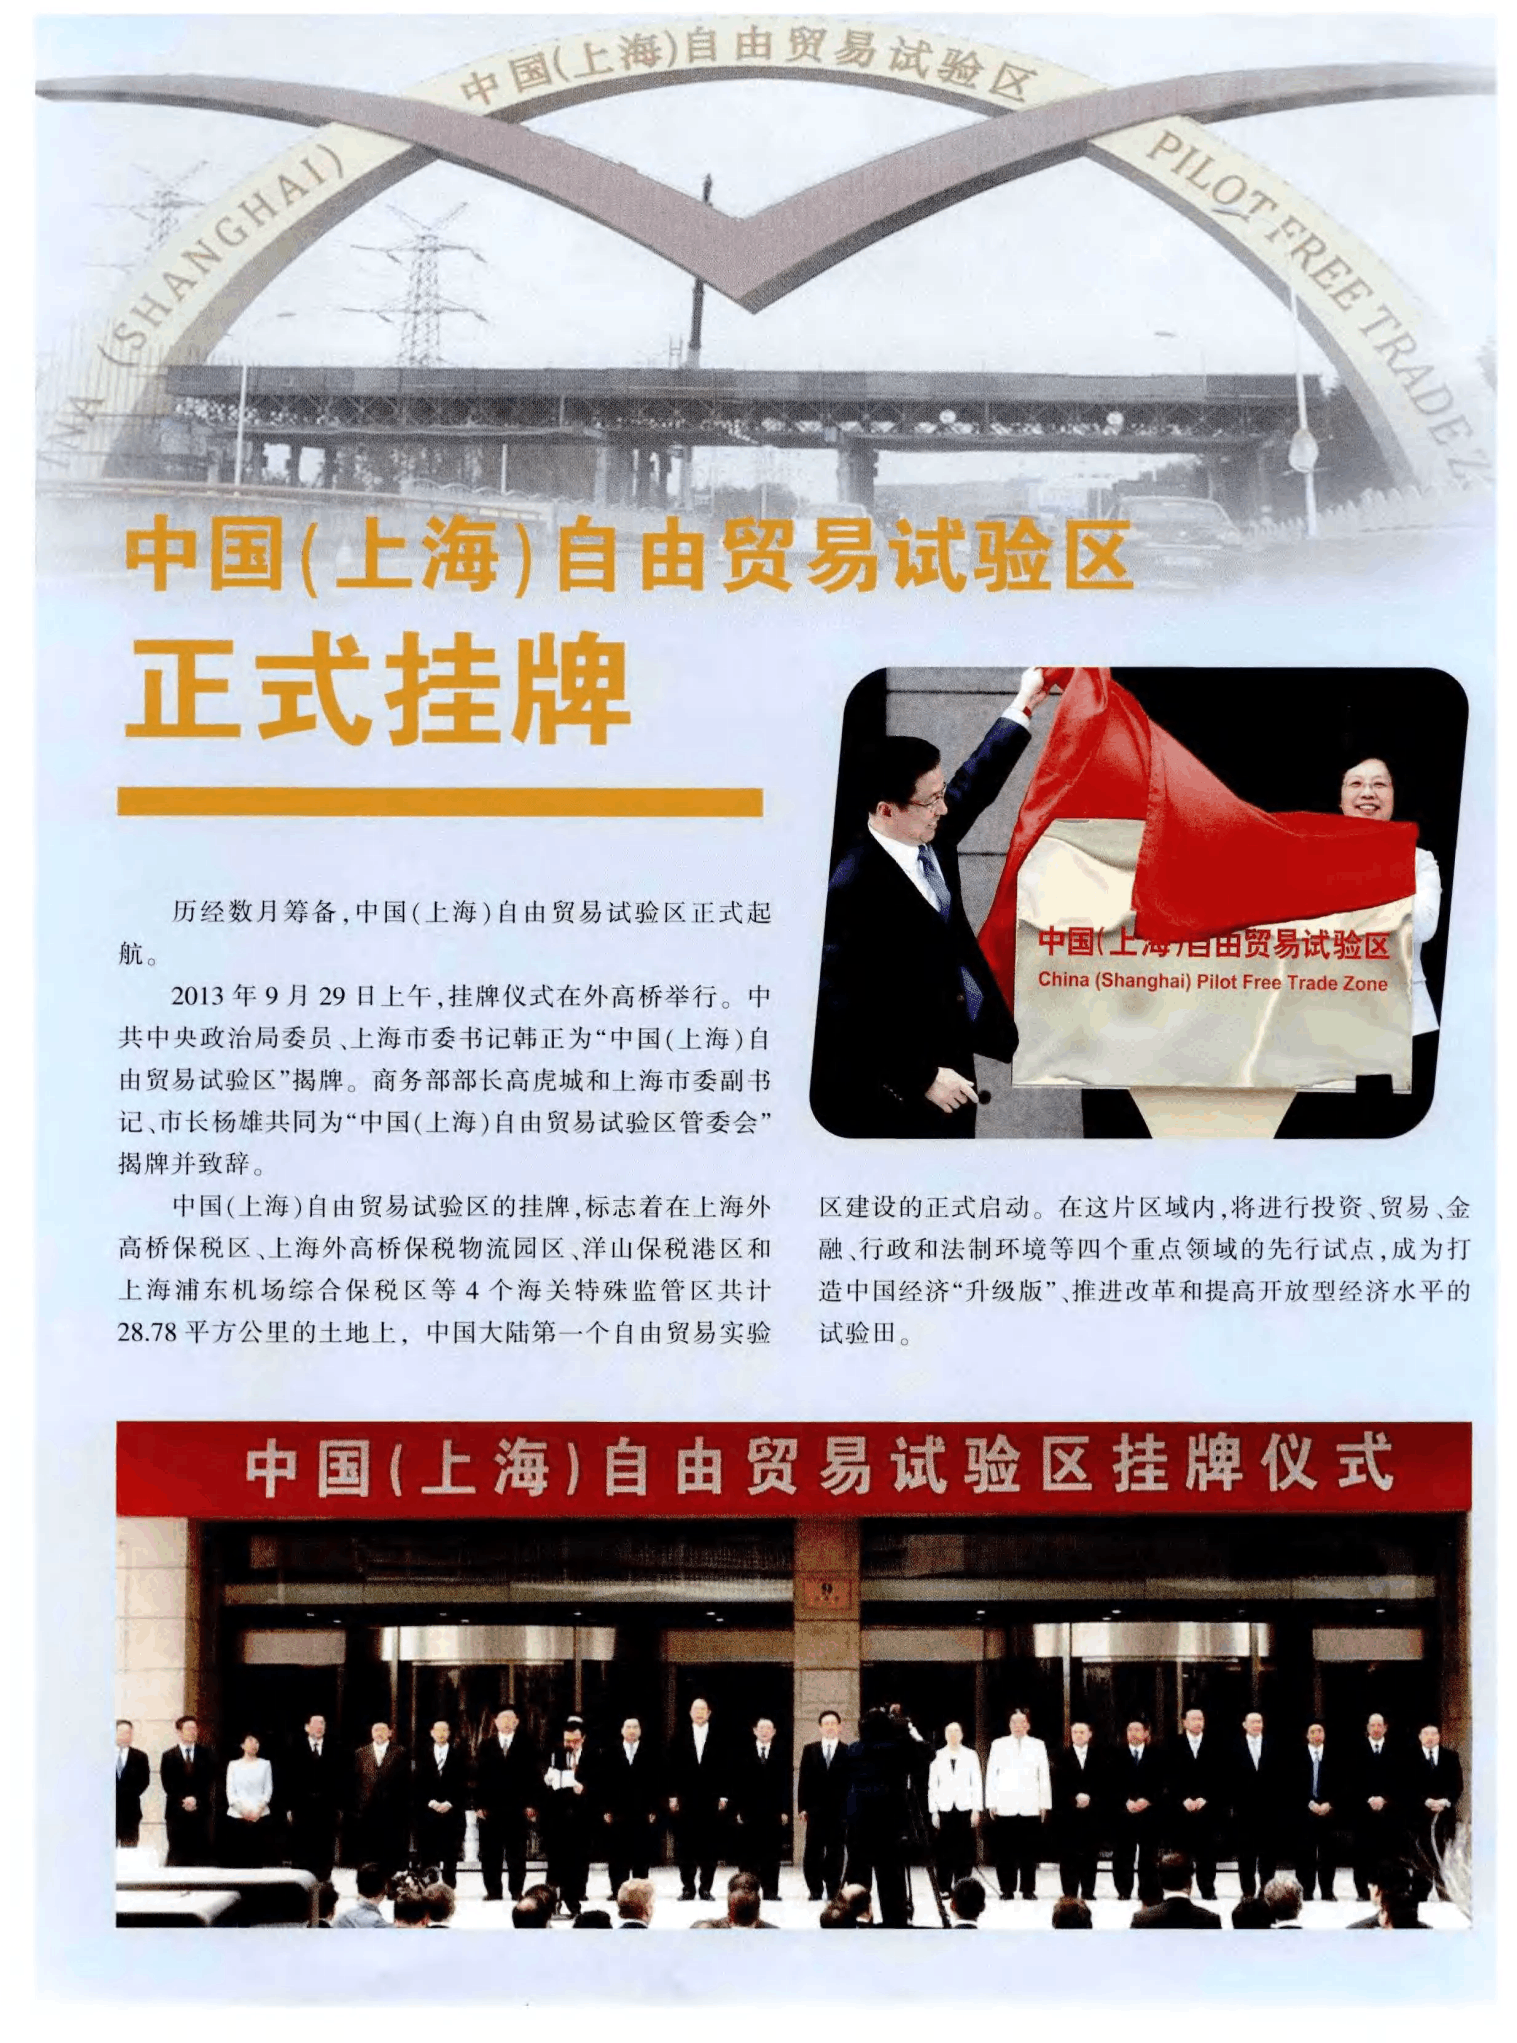 上海自贸试验区10周年揭牌